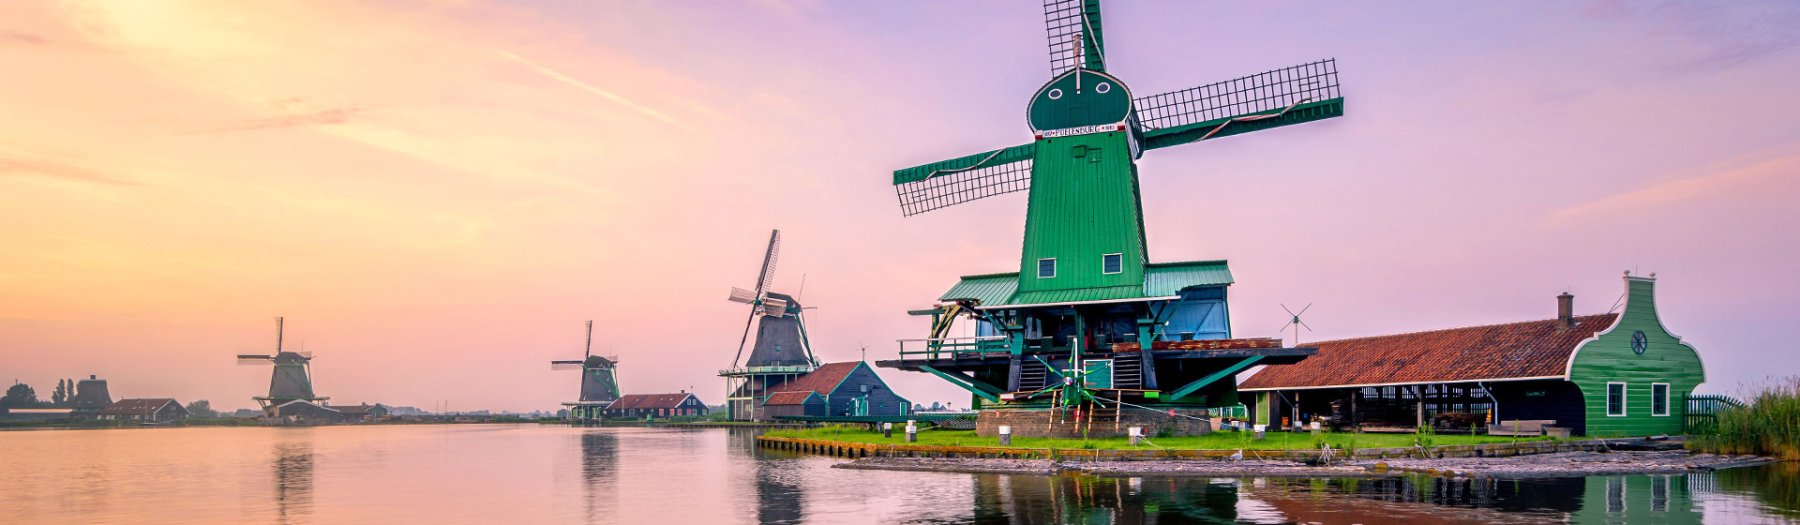 5 schöne Ferienhäuser in Holland warten auf Dich